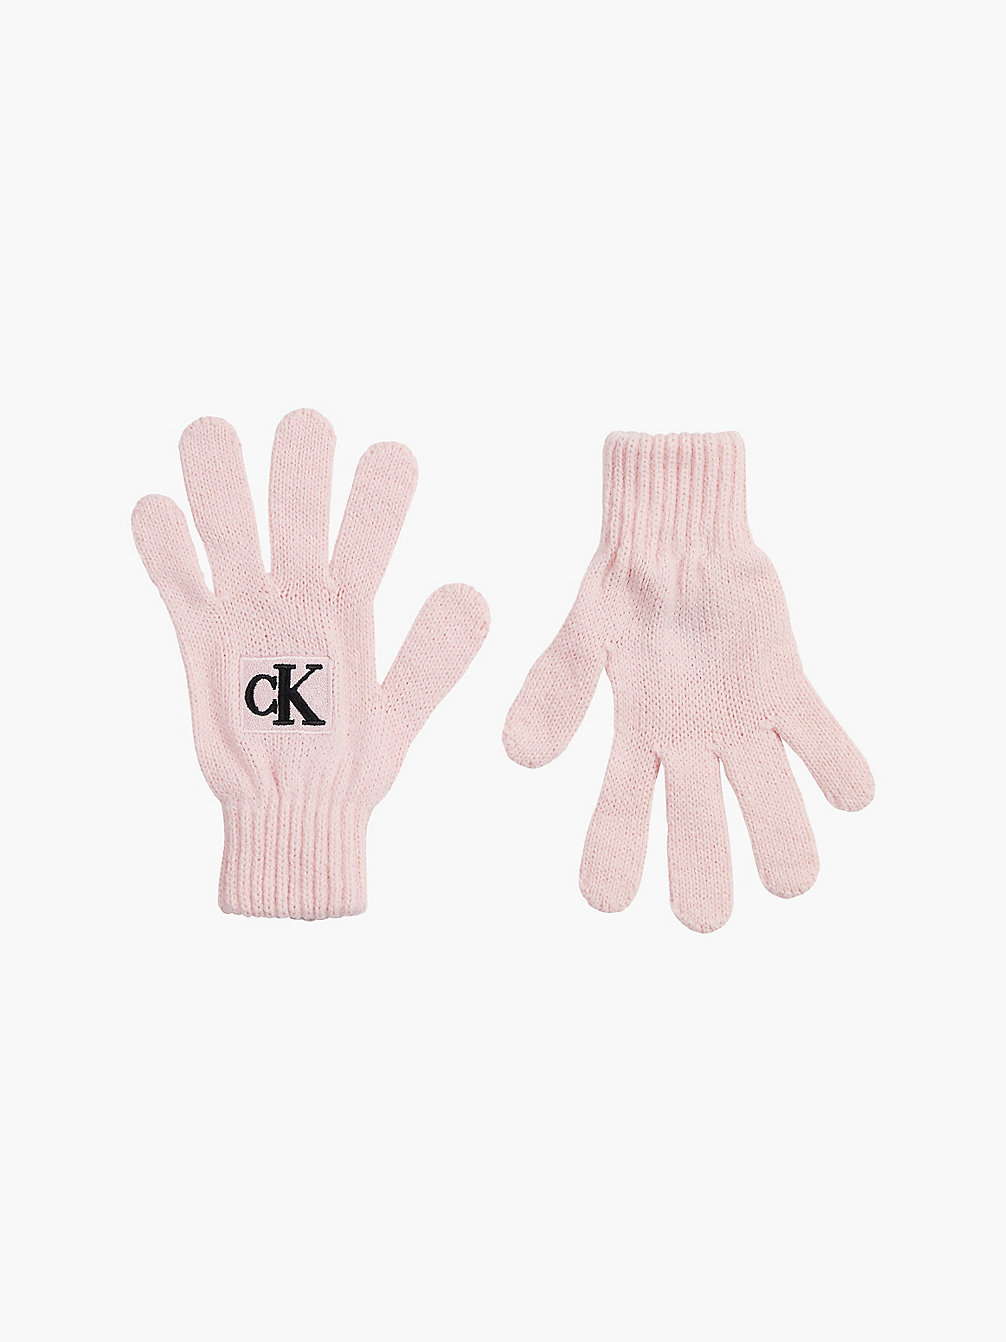 PINK BLUSH > Unisex-Logo-Handschuhe > undefined kids unisex - Calvin Klein